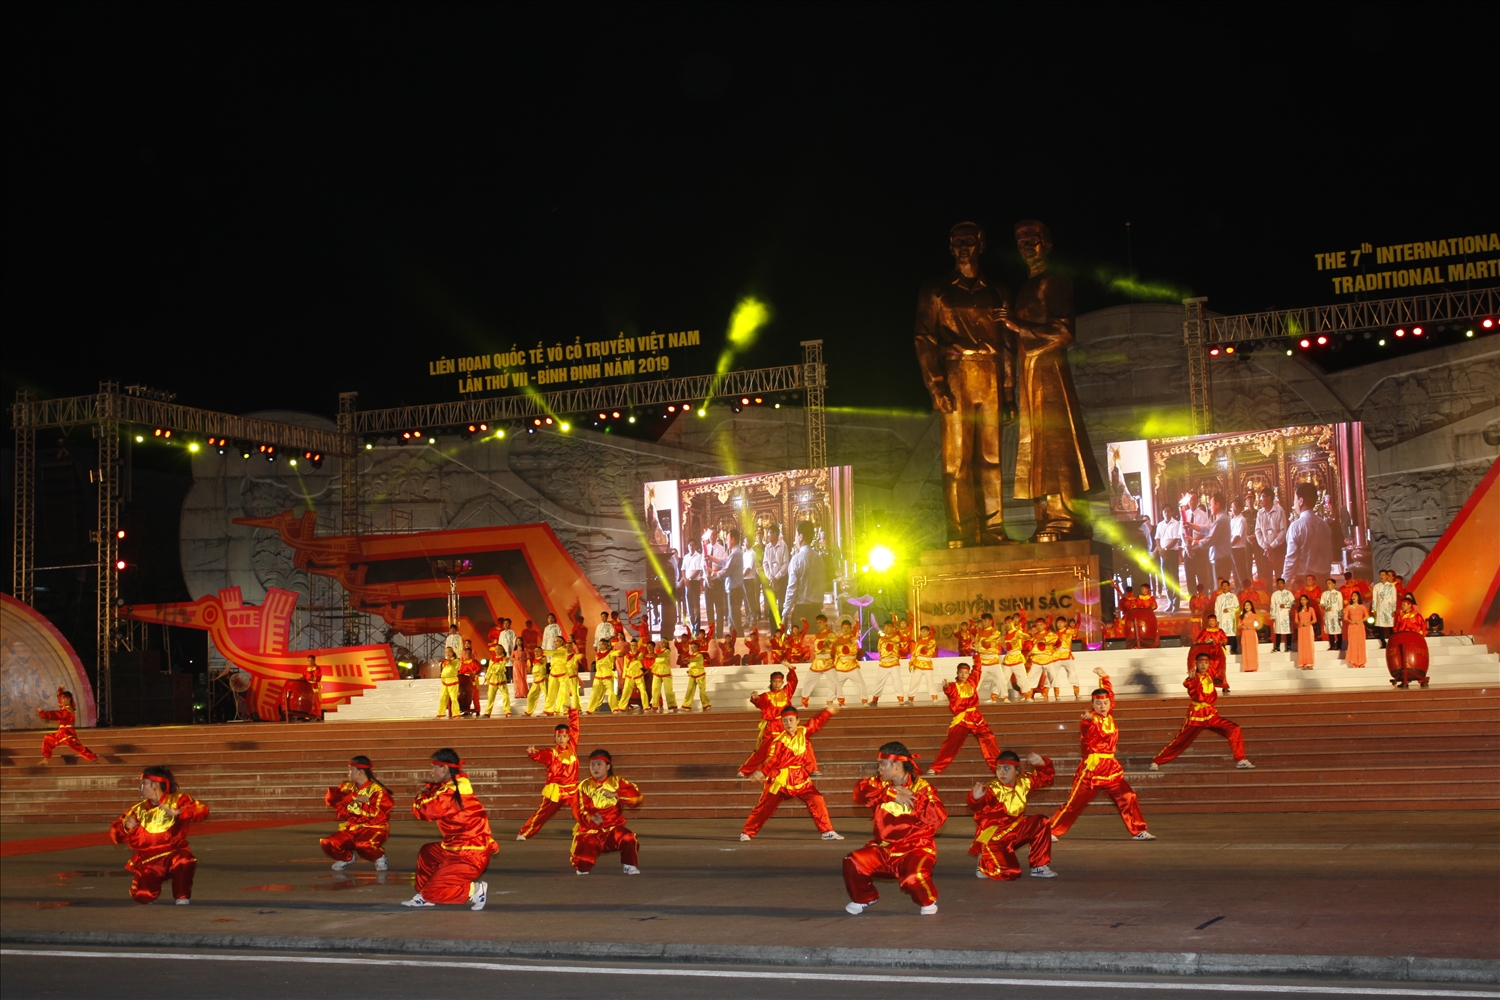 Liên hoan Quốc tế Võ cổ truyền Việt Nam lần thứ VII được tổ chức tại Bình Định năm 2019 